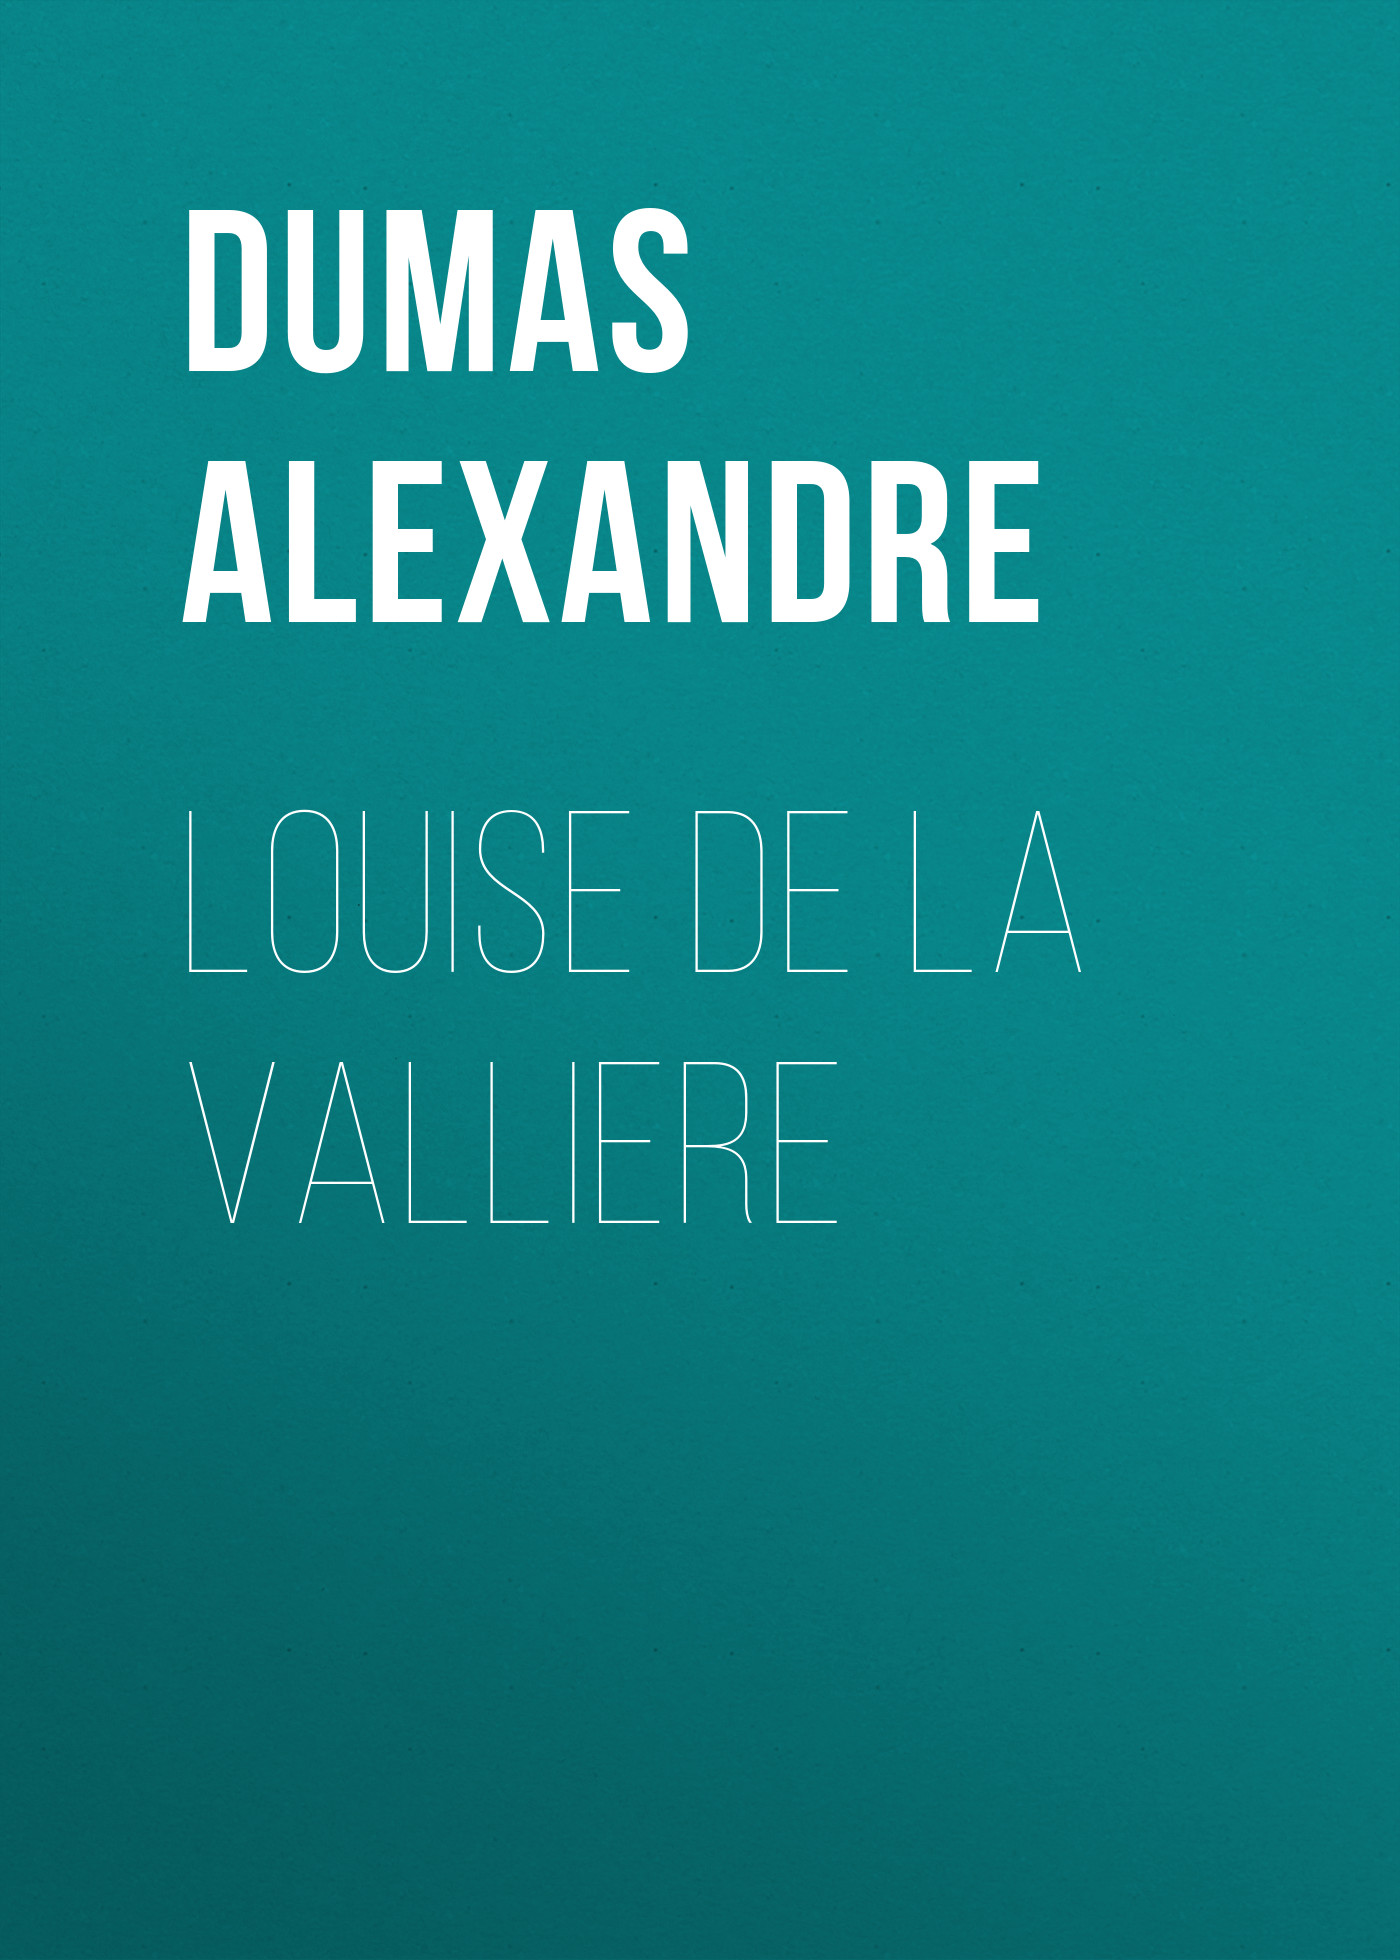 Книга Louise de la Valliere из серии , созданная Alexandre Dumas, может относится к жанру Литература 19 века, Зарубежная старинная литература, Зарубежная классика. Стоимость электронной книги Louise de la Valliere с идентификатором 25202295 составляет 0 руб.